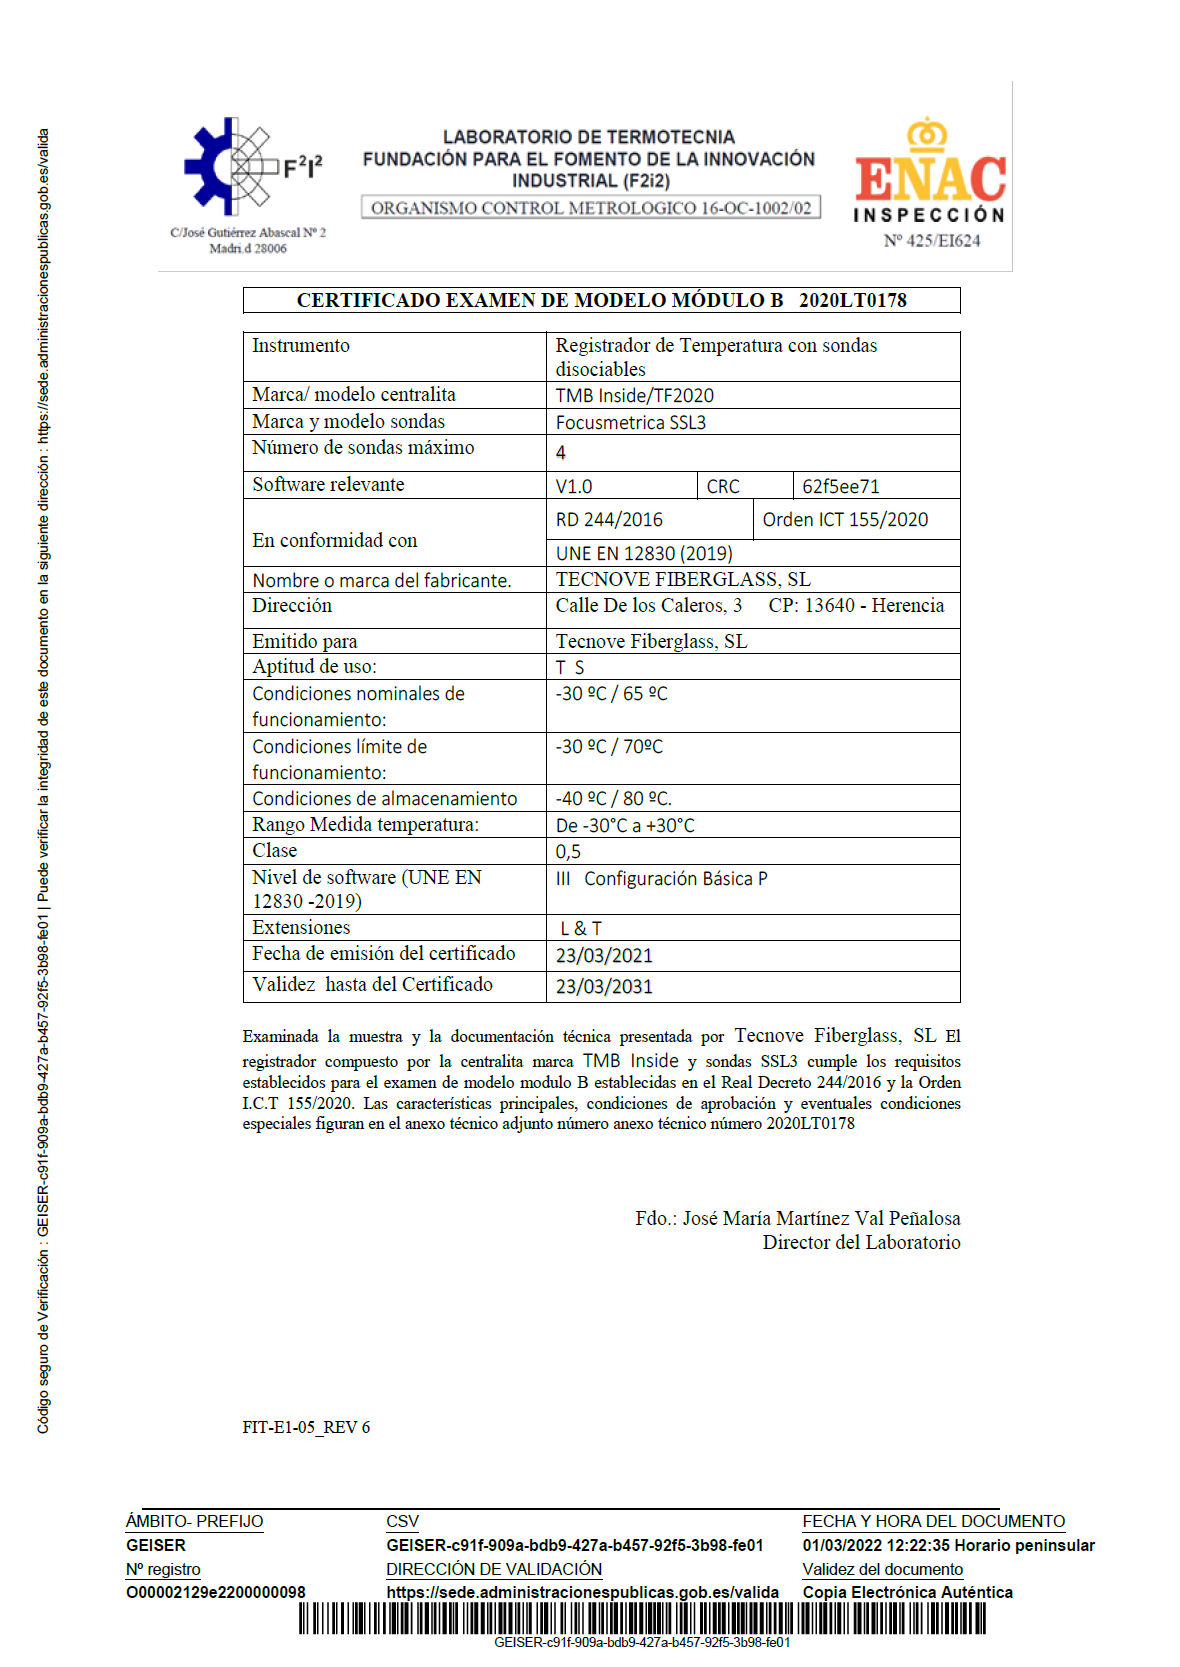 Certificado examen de modelo módulo B nº 2020LT178